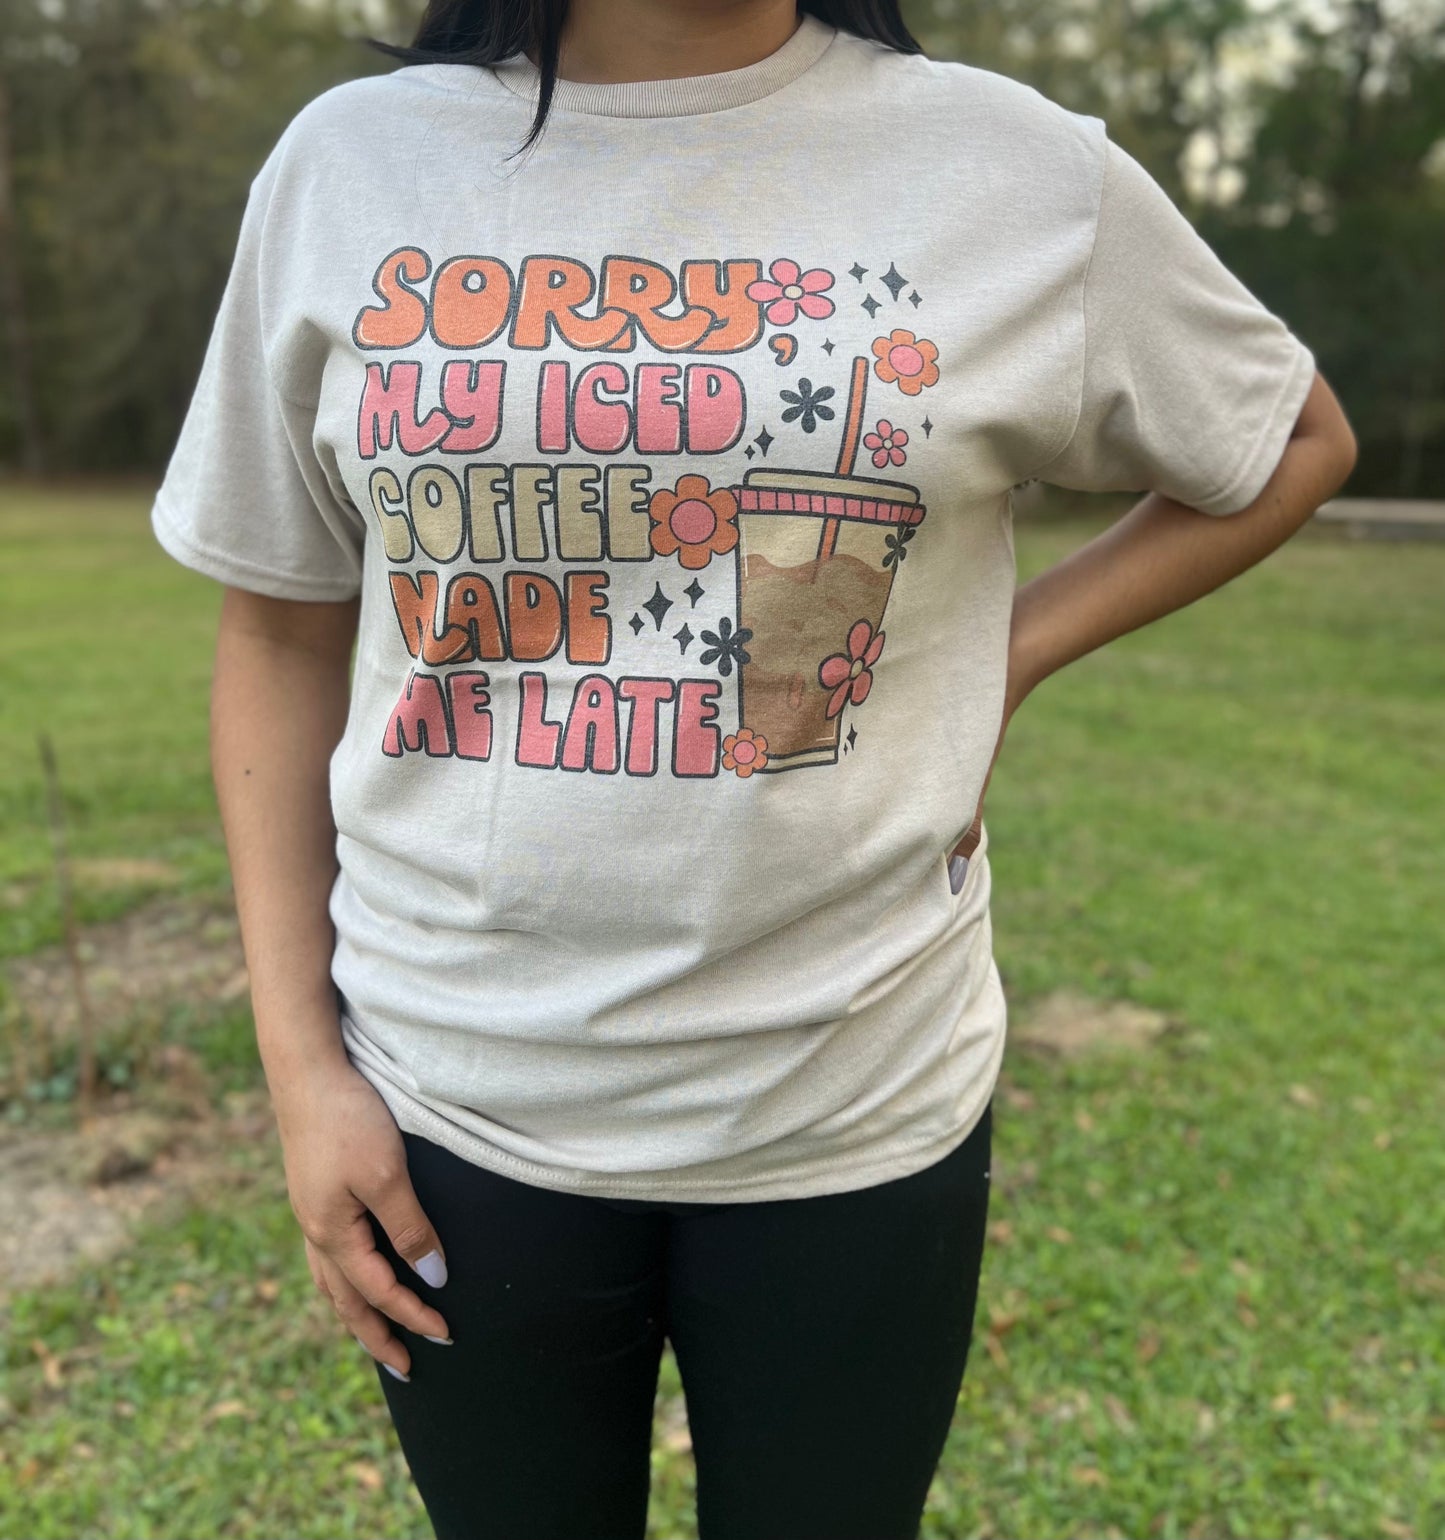 Iced Coffee T-Shirt